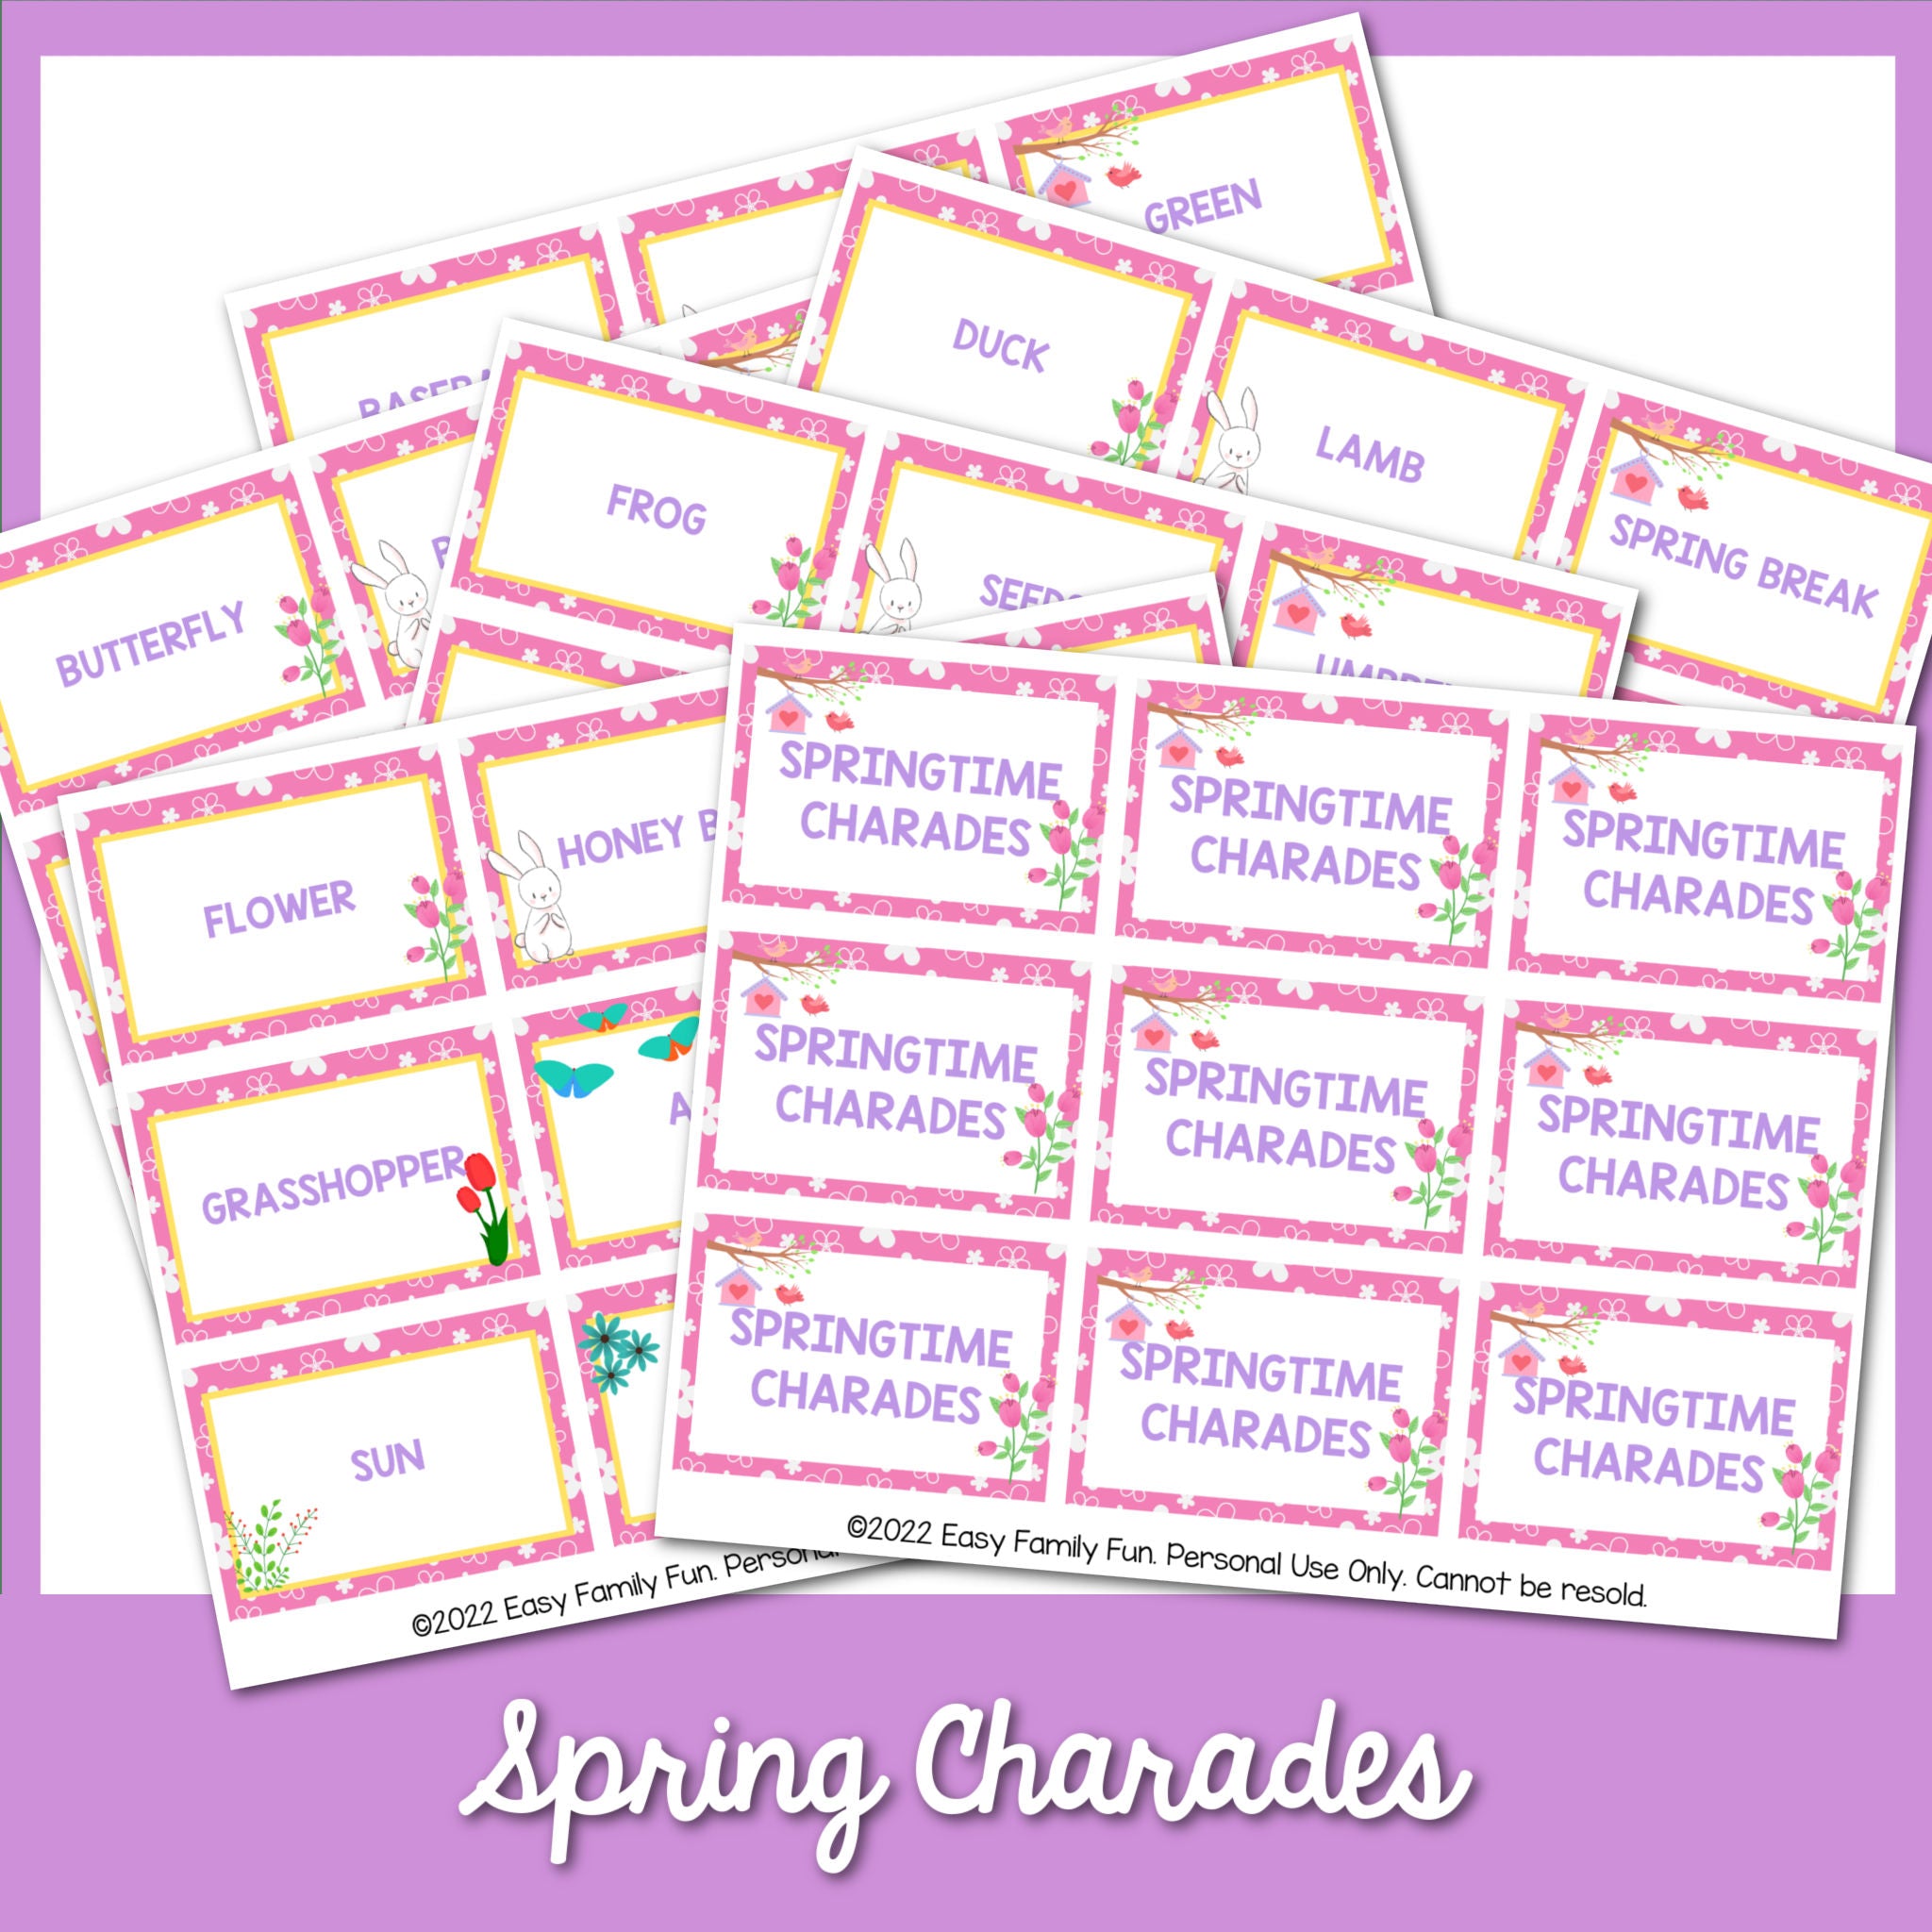 Springtime Charades Cards